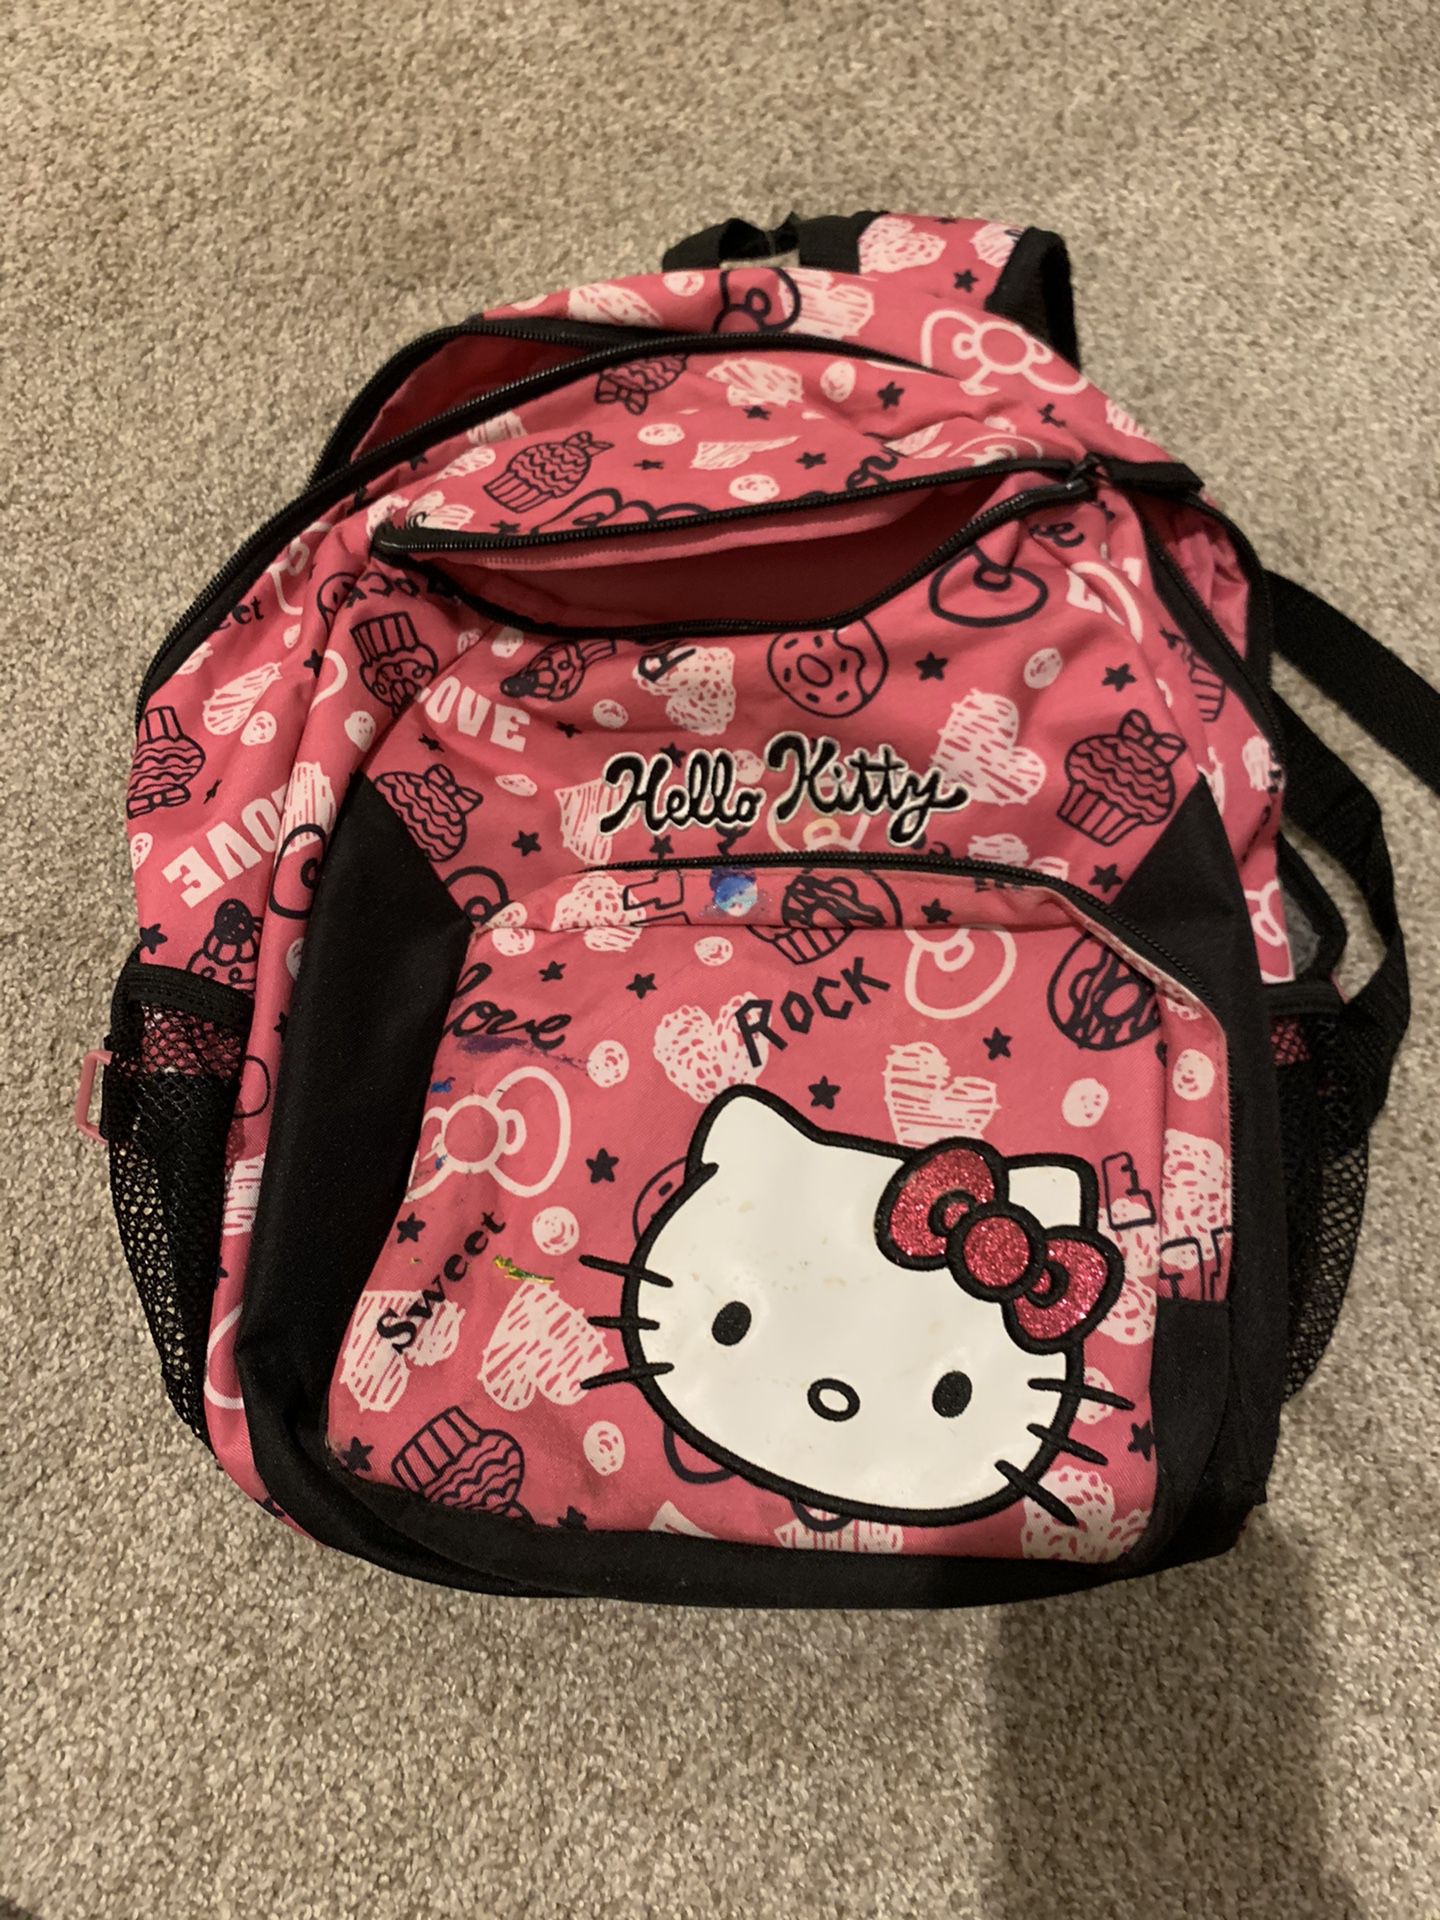 Hello kitty backpack for smaller kids